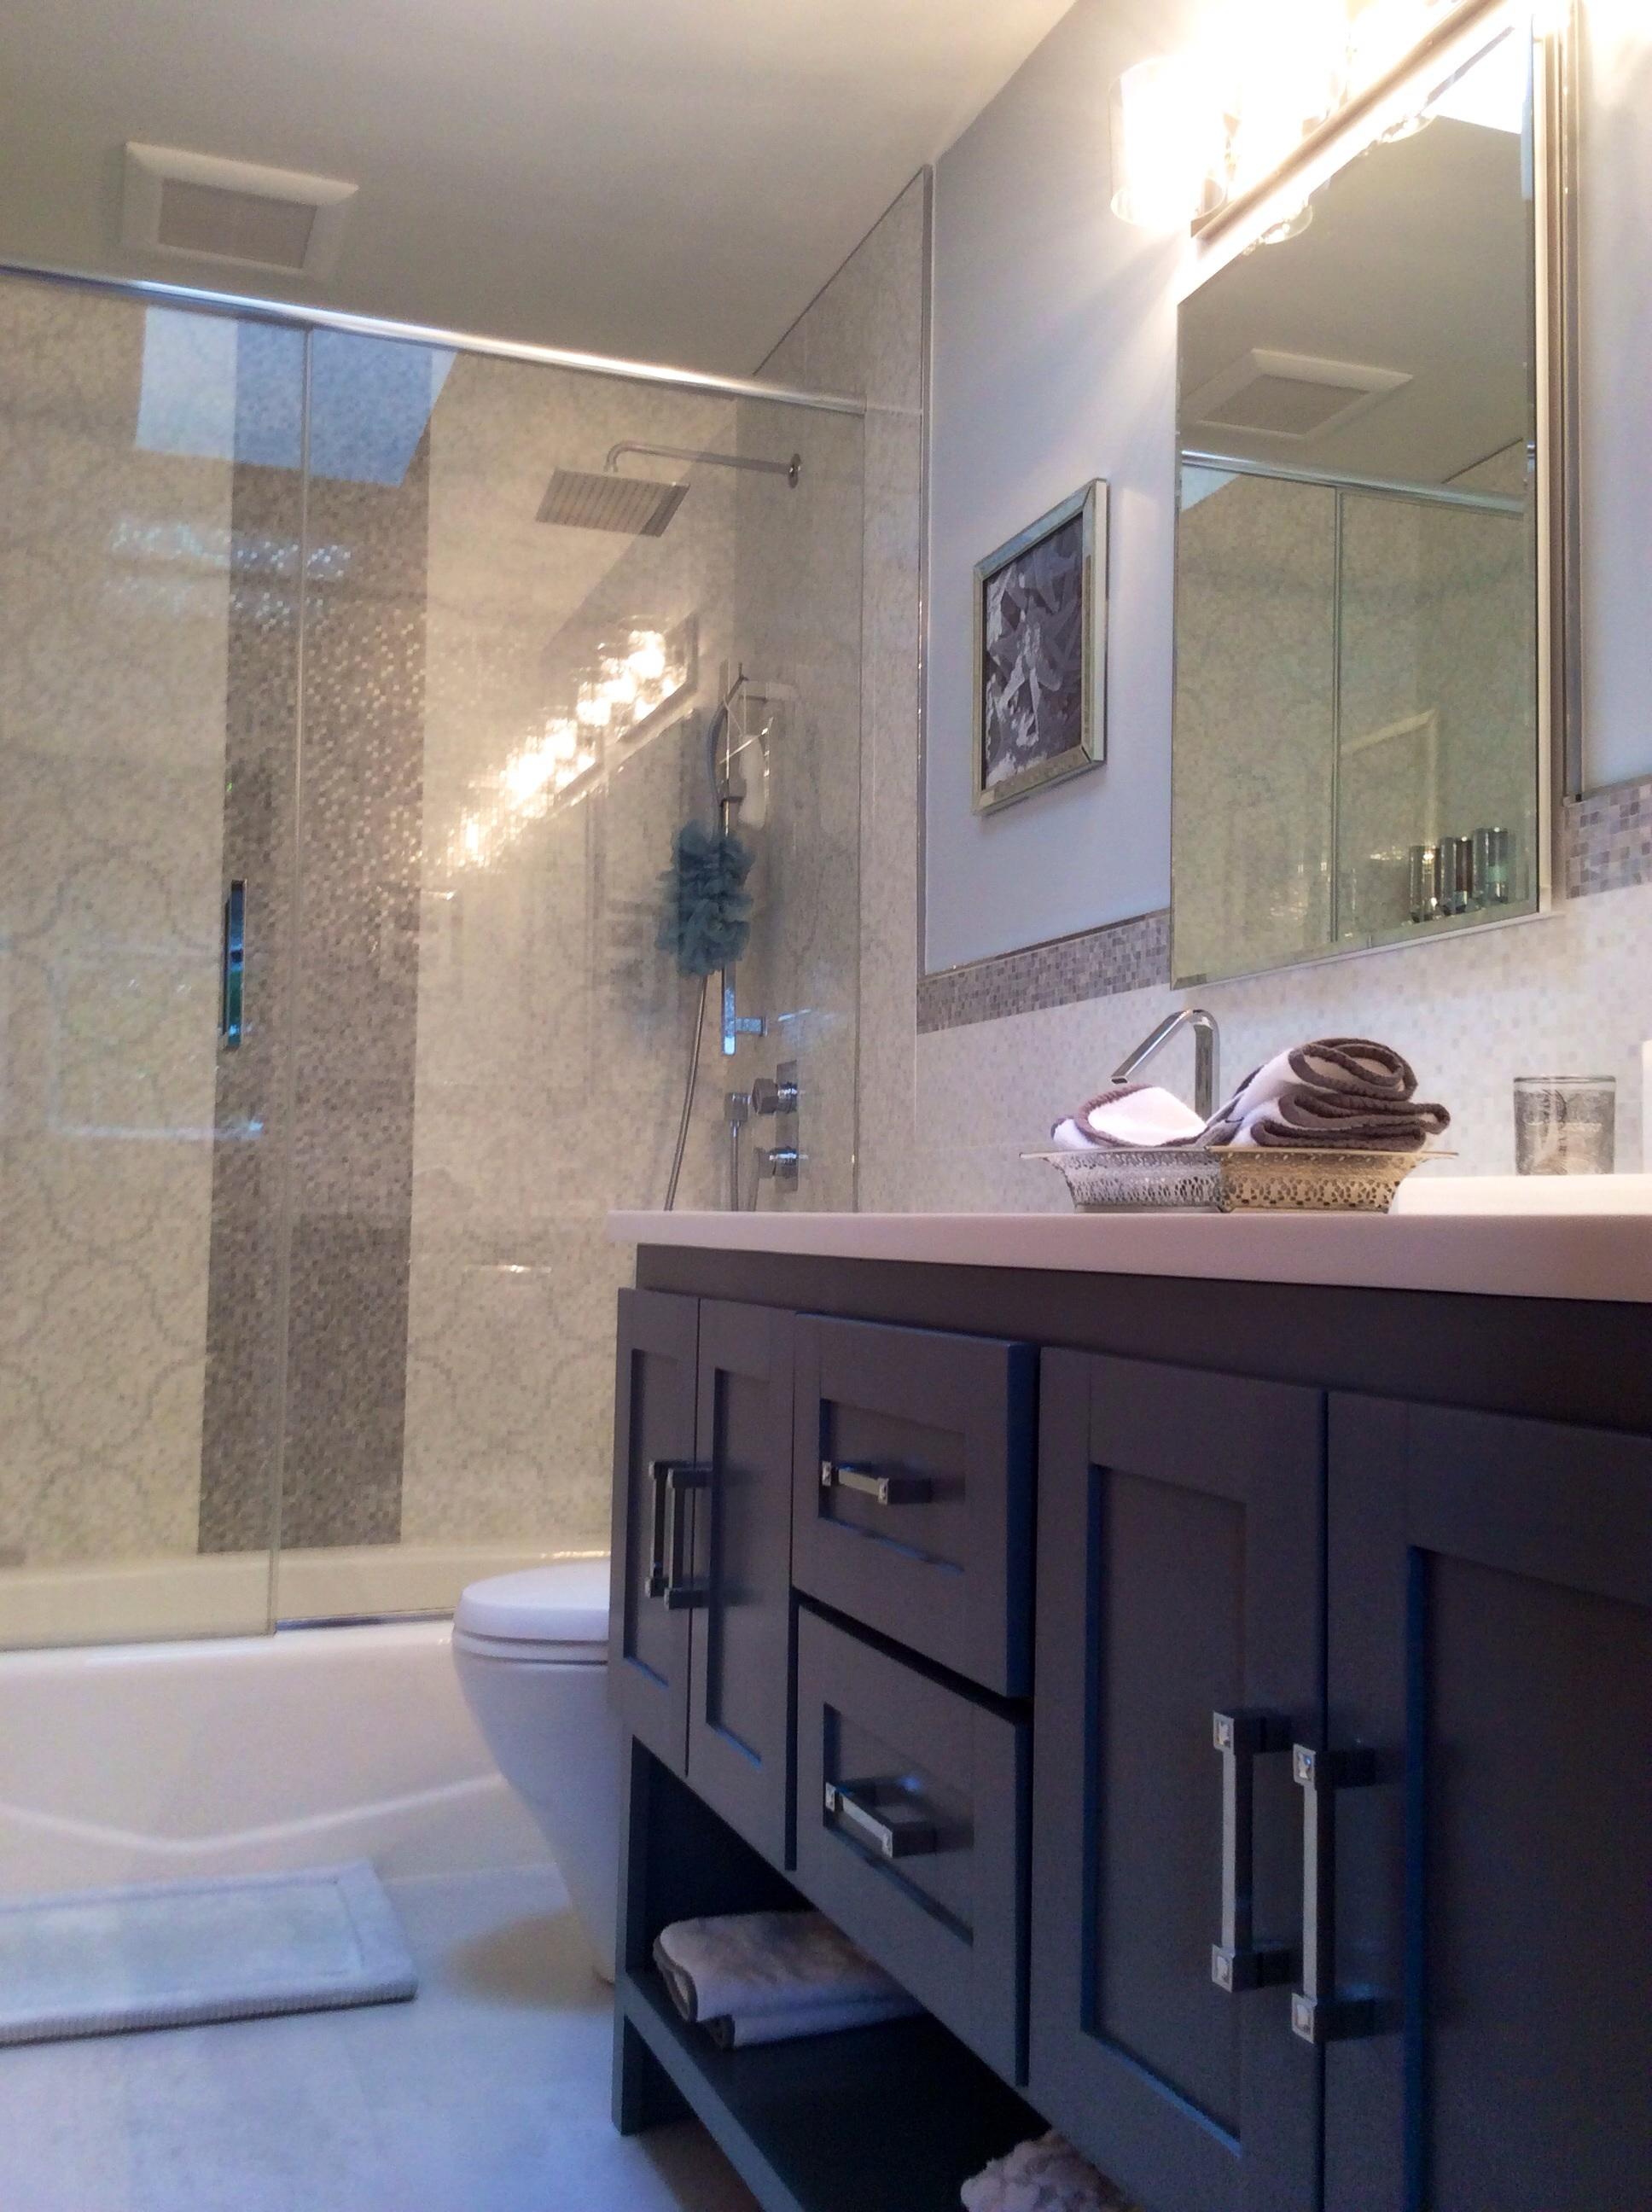 Complete bathroom remodel include custom vanity built in